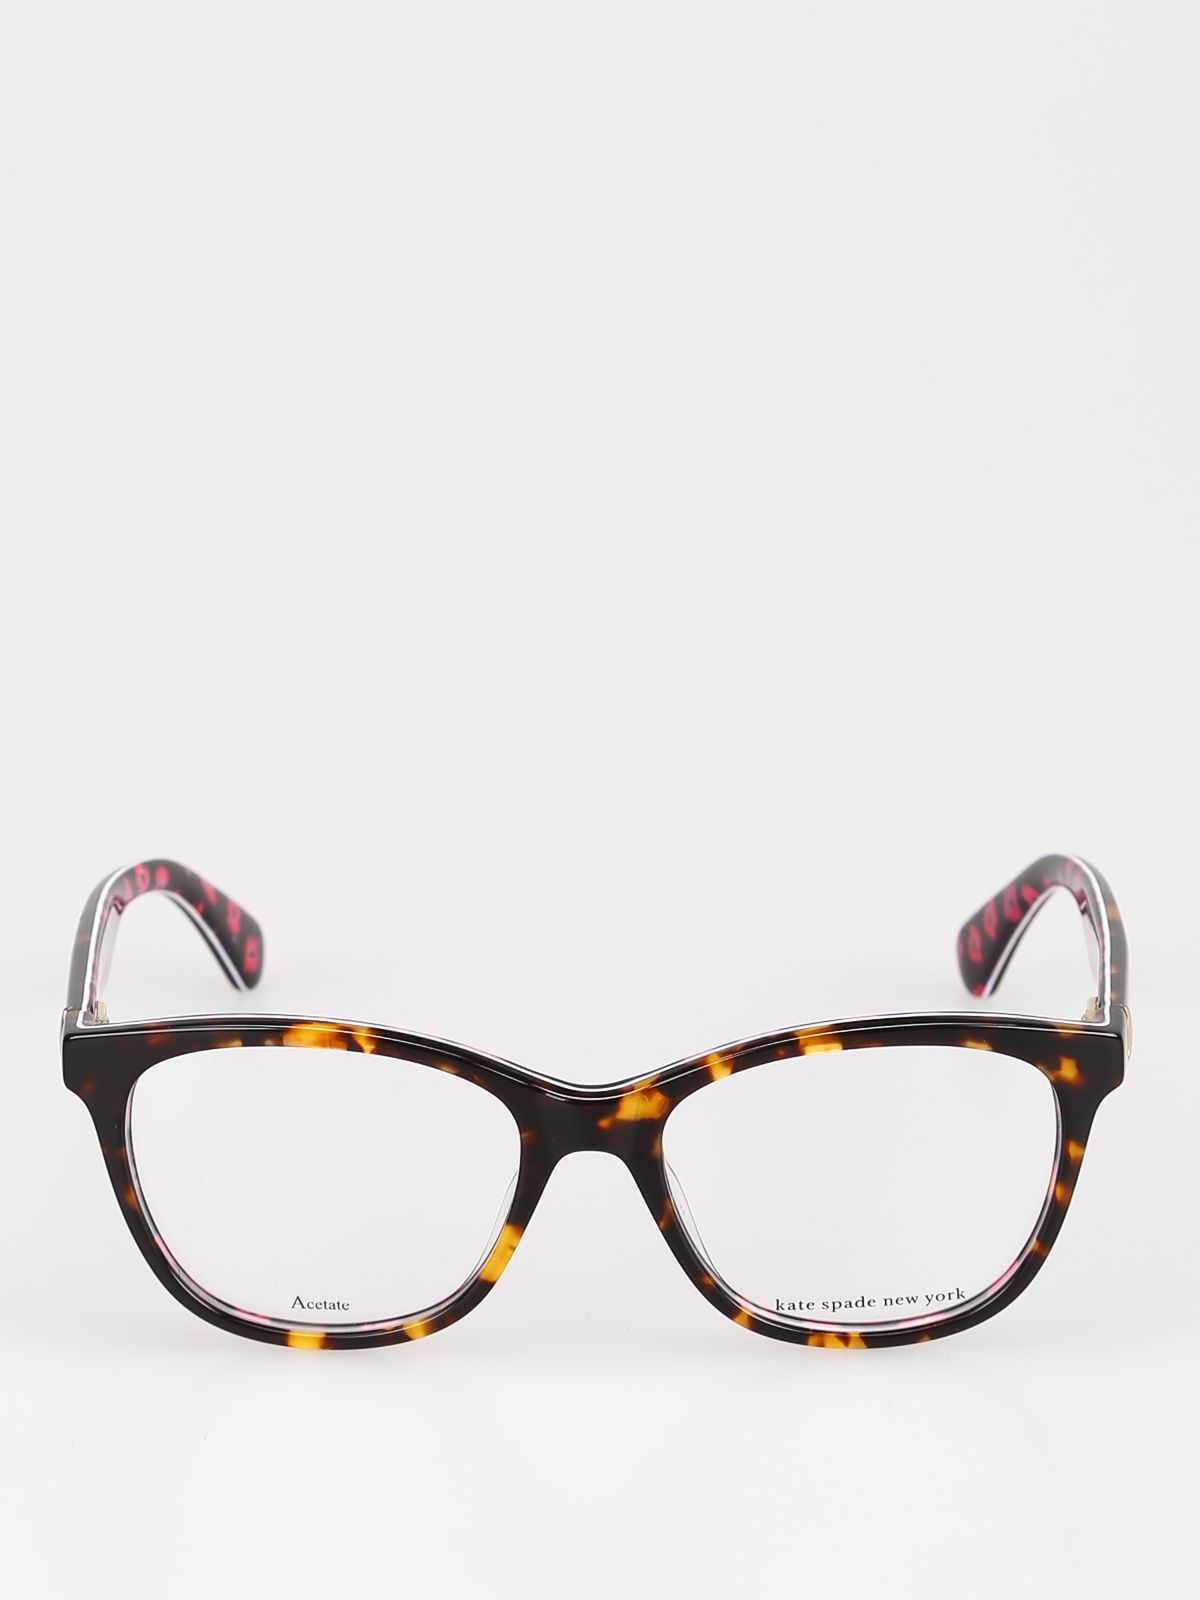 Glasses Kate Spade - Atalina havana and floral optical glasses -  ATALINA2VM16